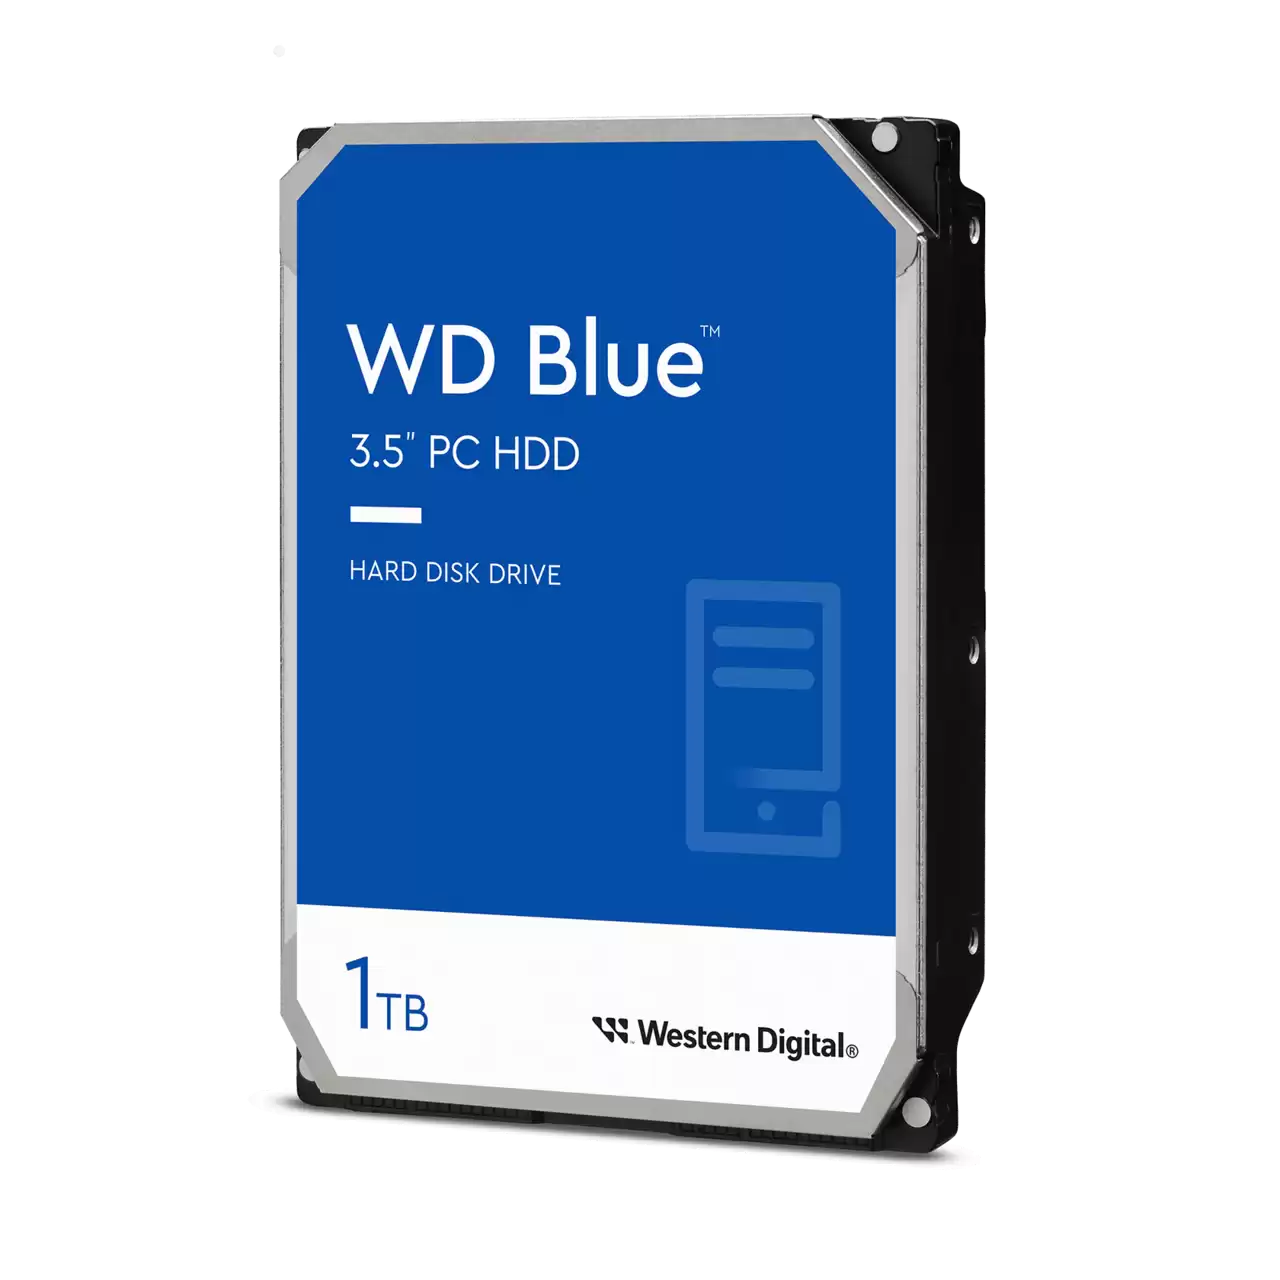 WD Blue PC Desktop Hard Drive - 1TB - 3.5 SATA - WD10EZRZ